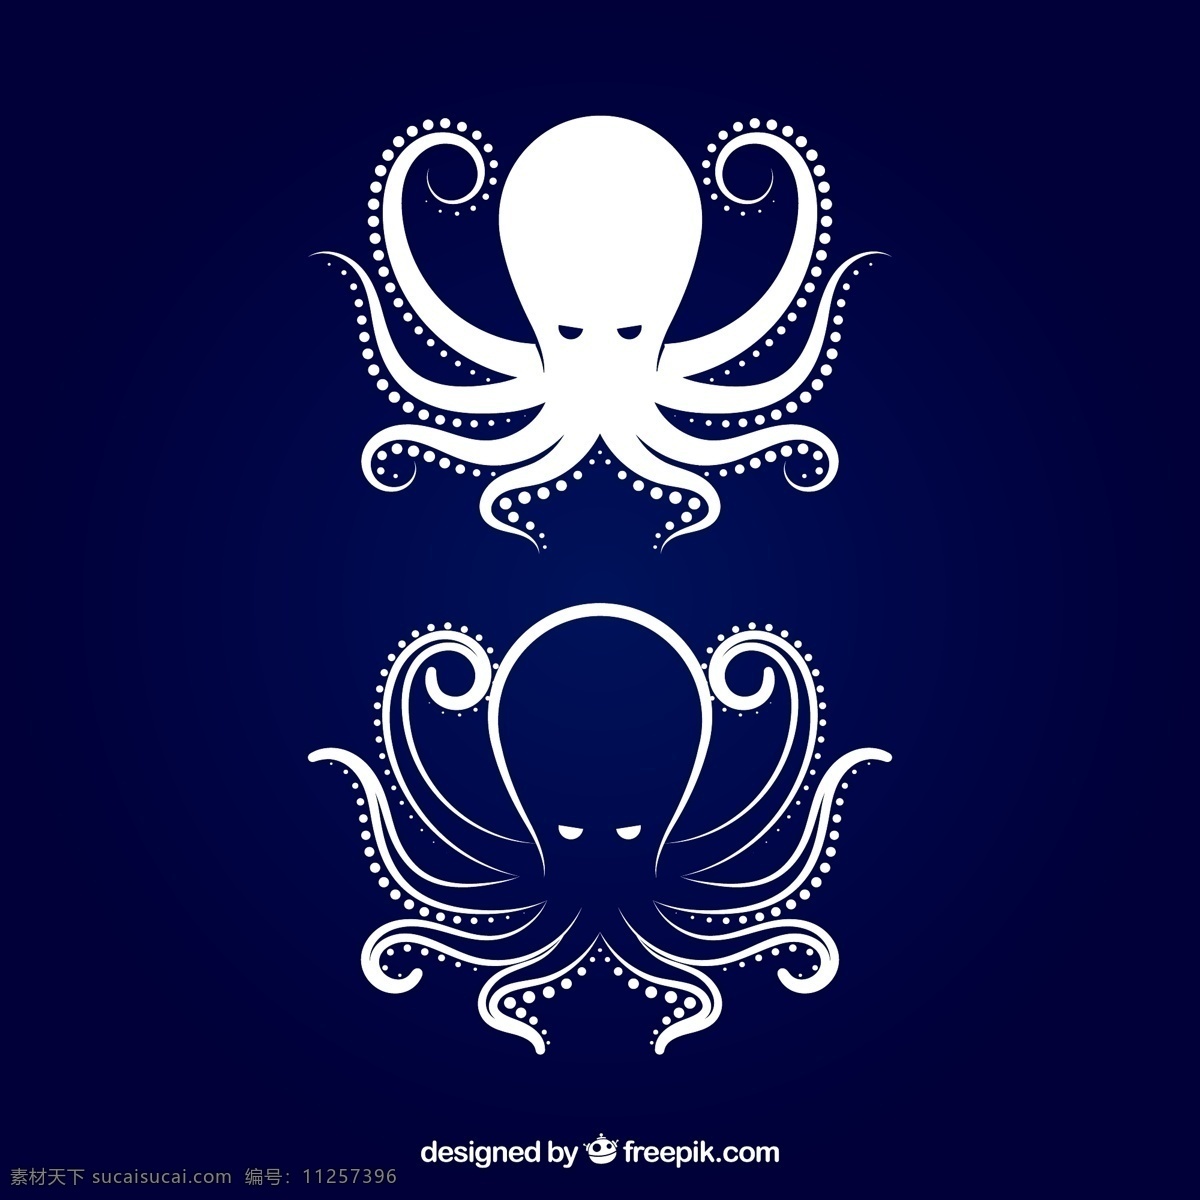 海洋动物 章鱼 八爪鱼 魔鬼鱼 创意章鱼设计 生物世界 鱼类